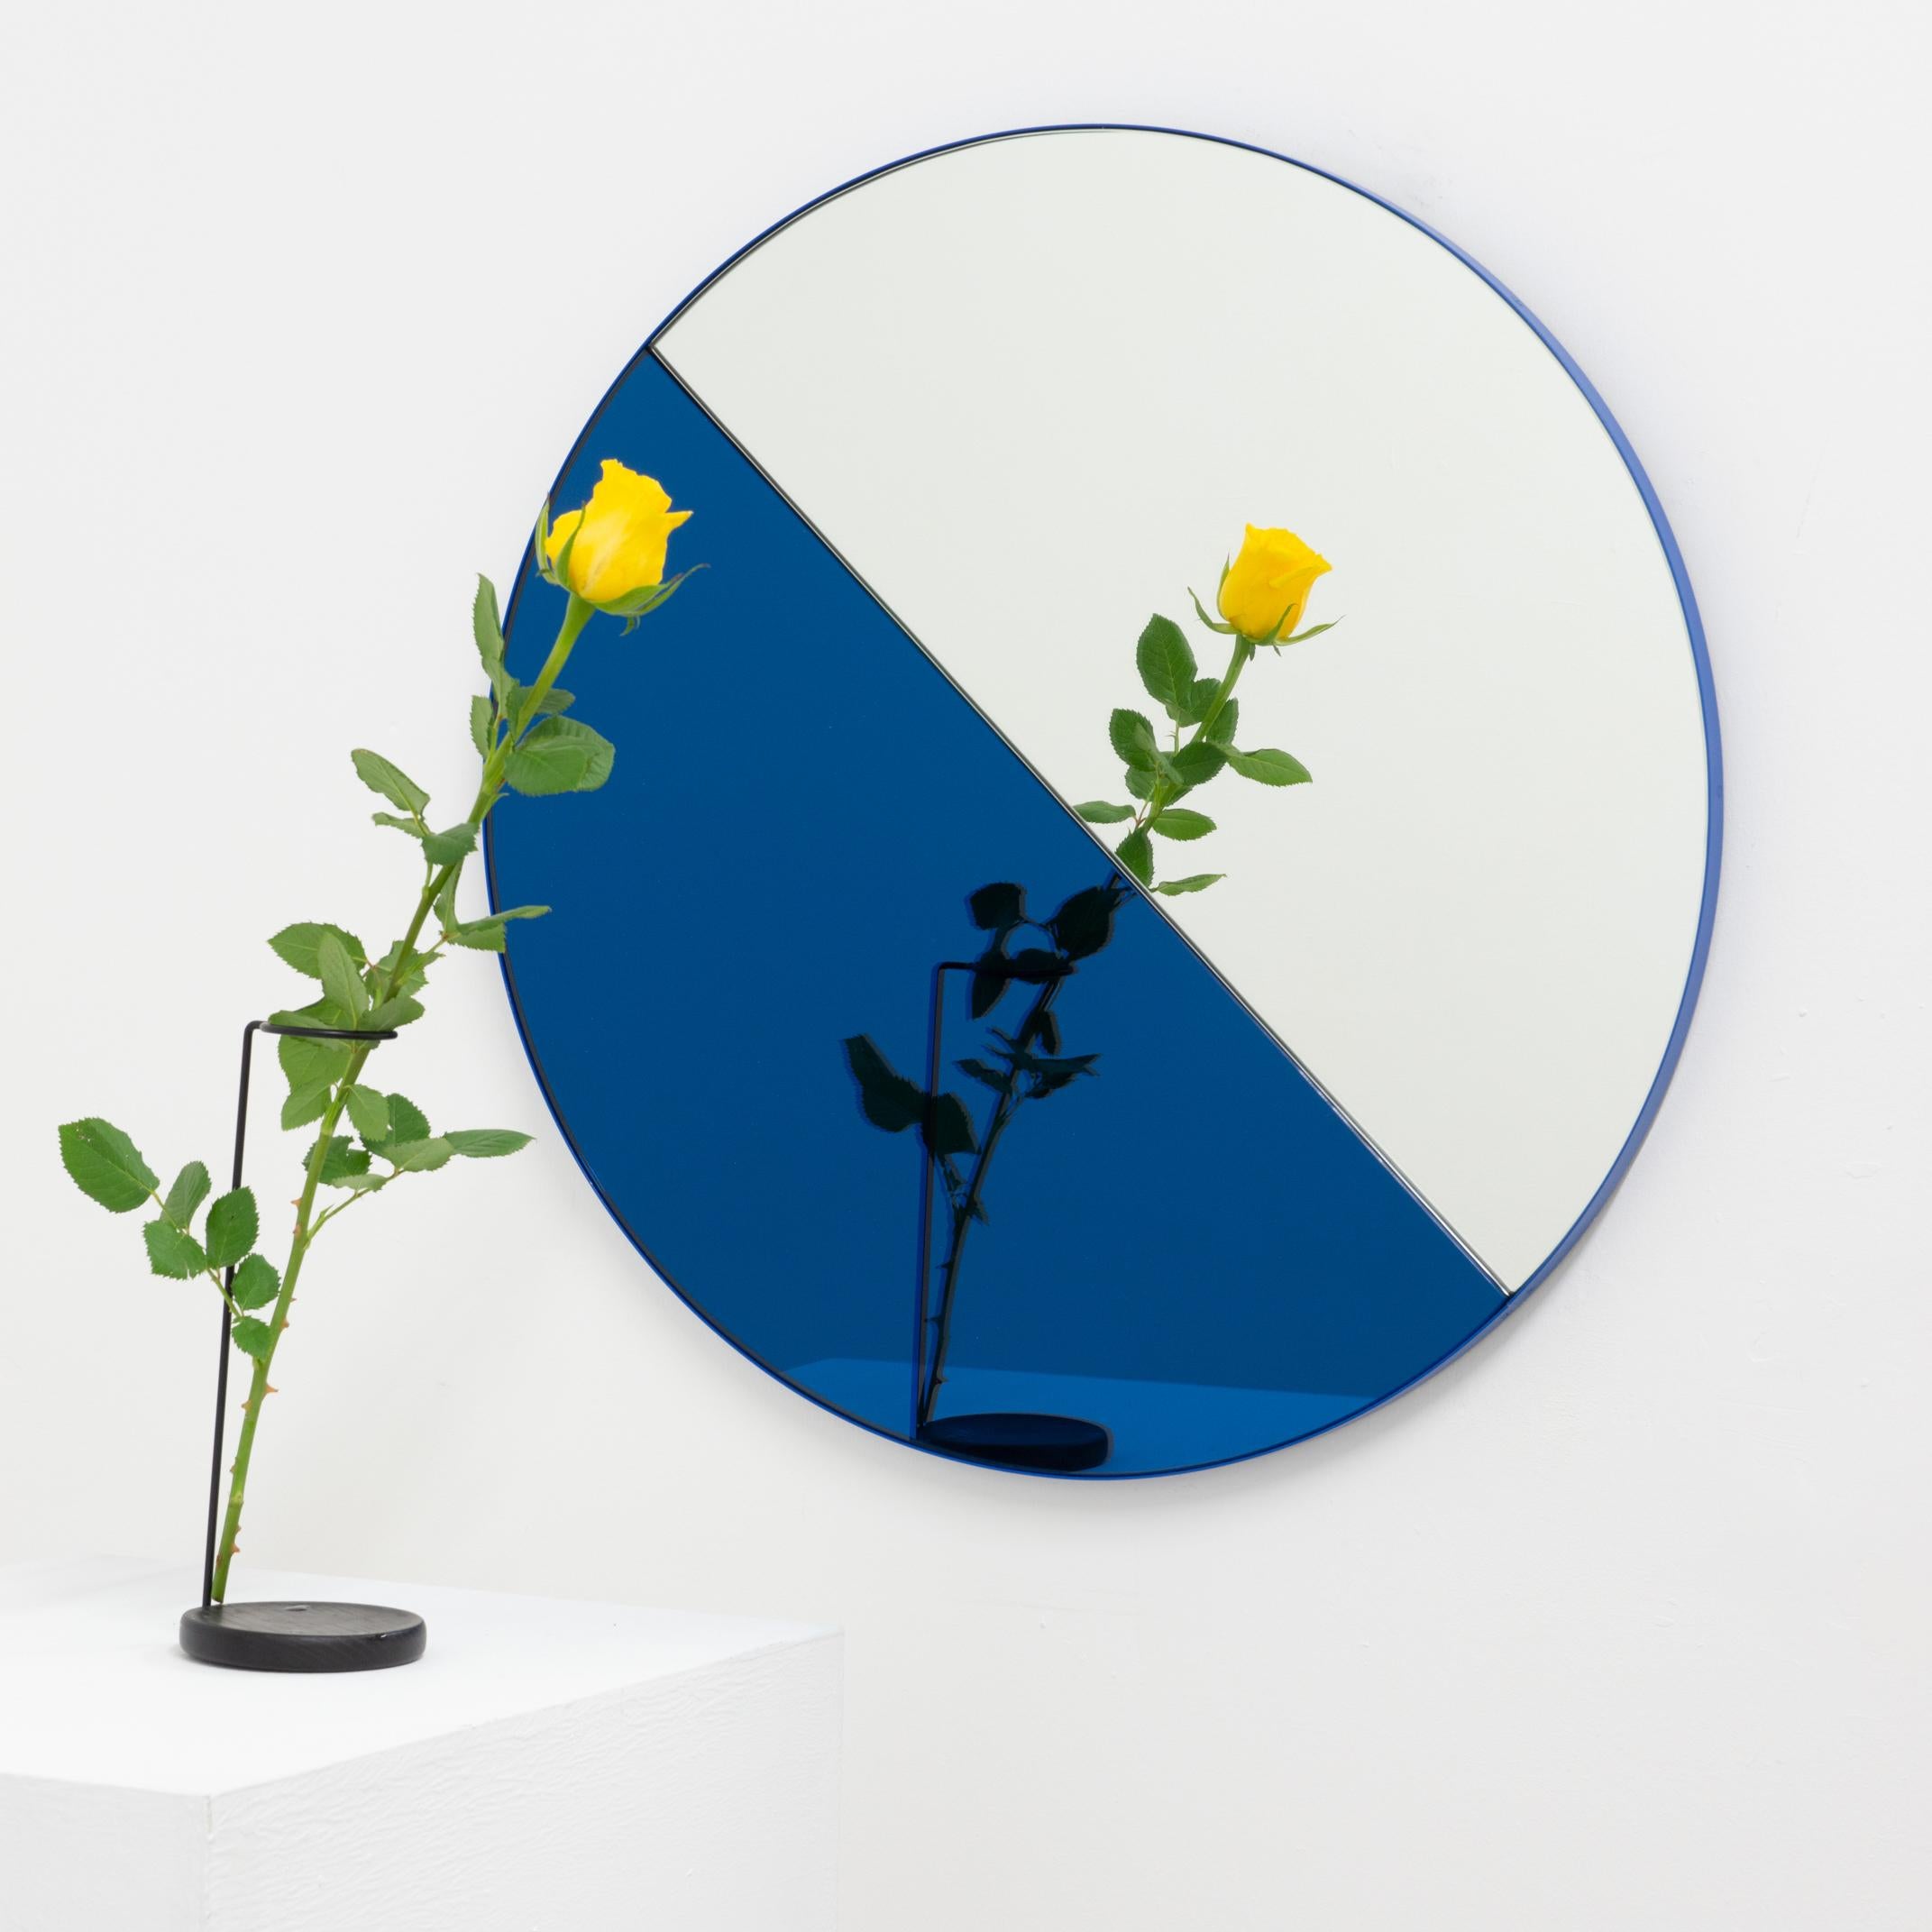 Miroir contemporain mixte bleu et argenté teinté Dualis Orbis avec un cadre bleu. Conçu et fabriqué à la main à Londres, au Royaume-Uni.

Livré entièrement équipé d'un système d'accrochage spécialisé qui permet de suspendre le miroir dans quatre